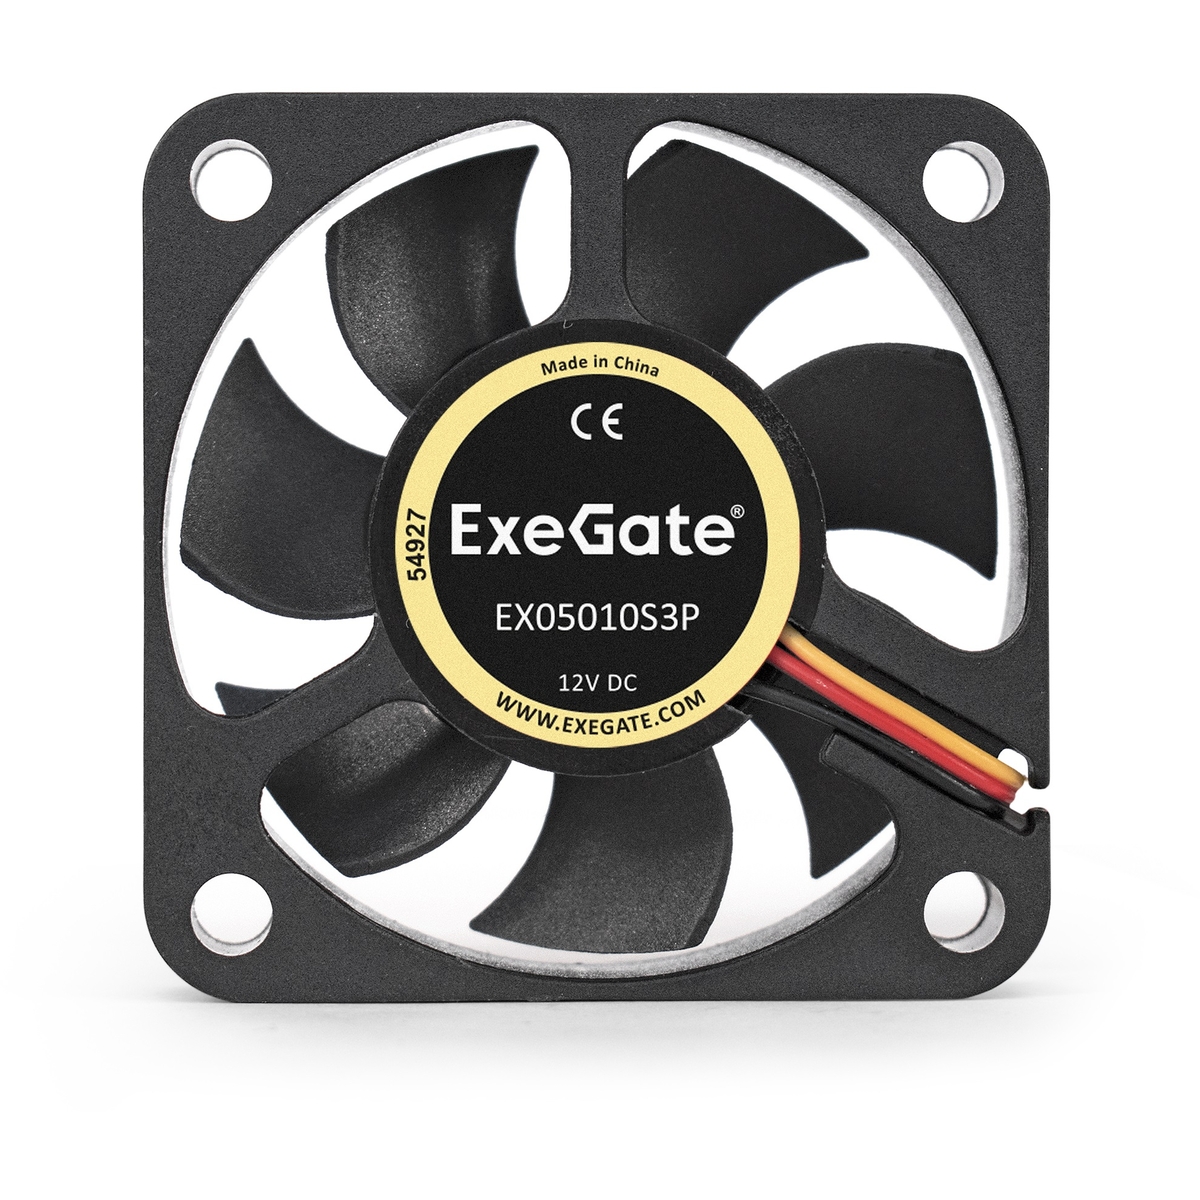  ExeGate EX05010S3P